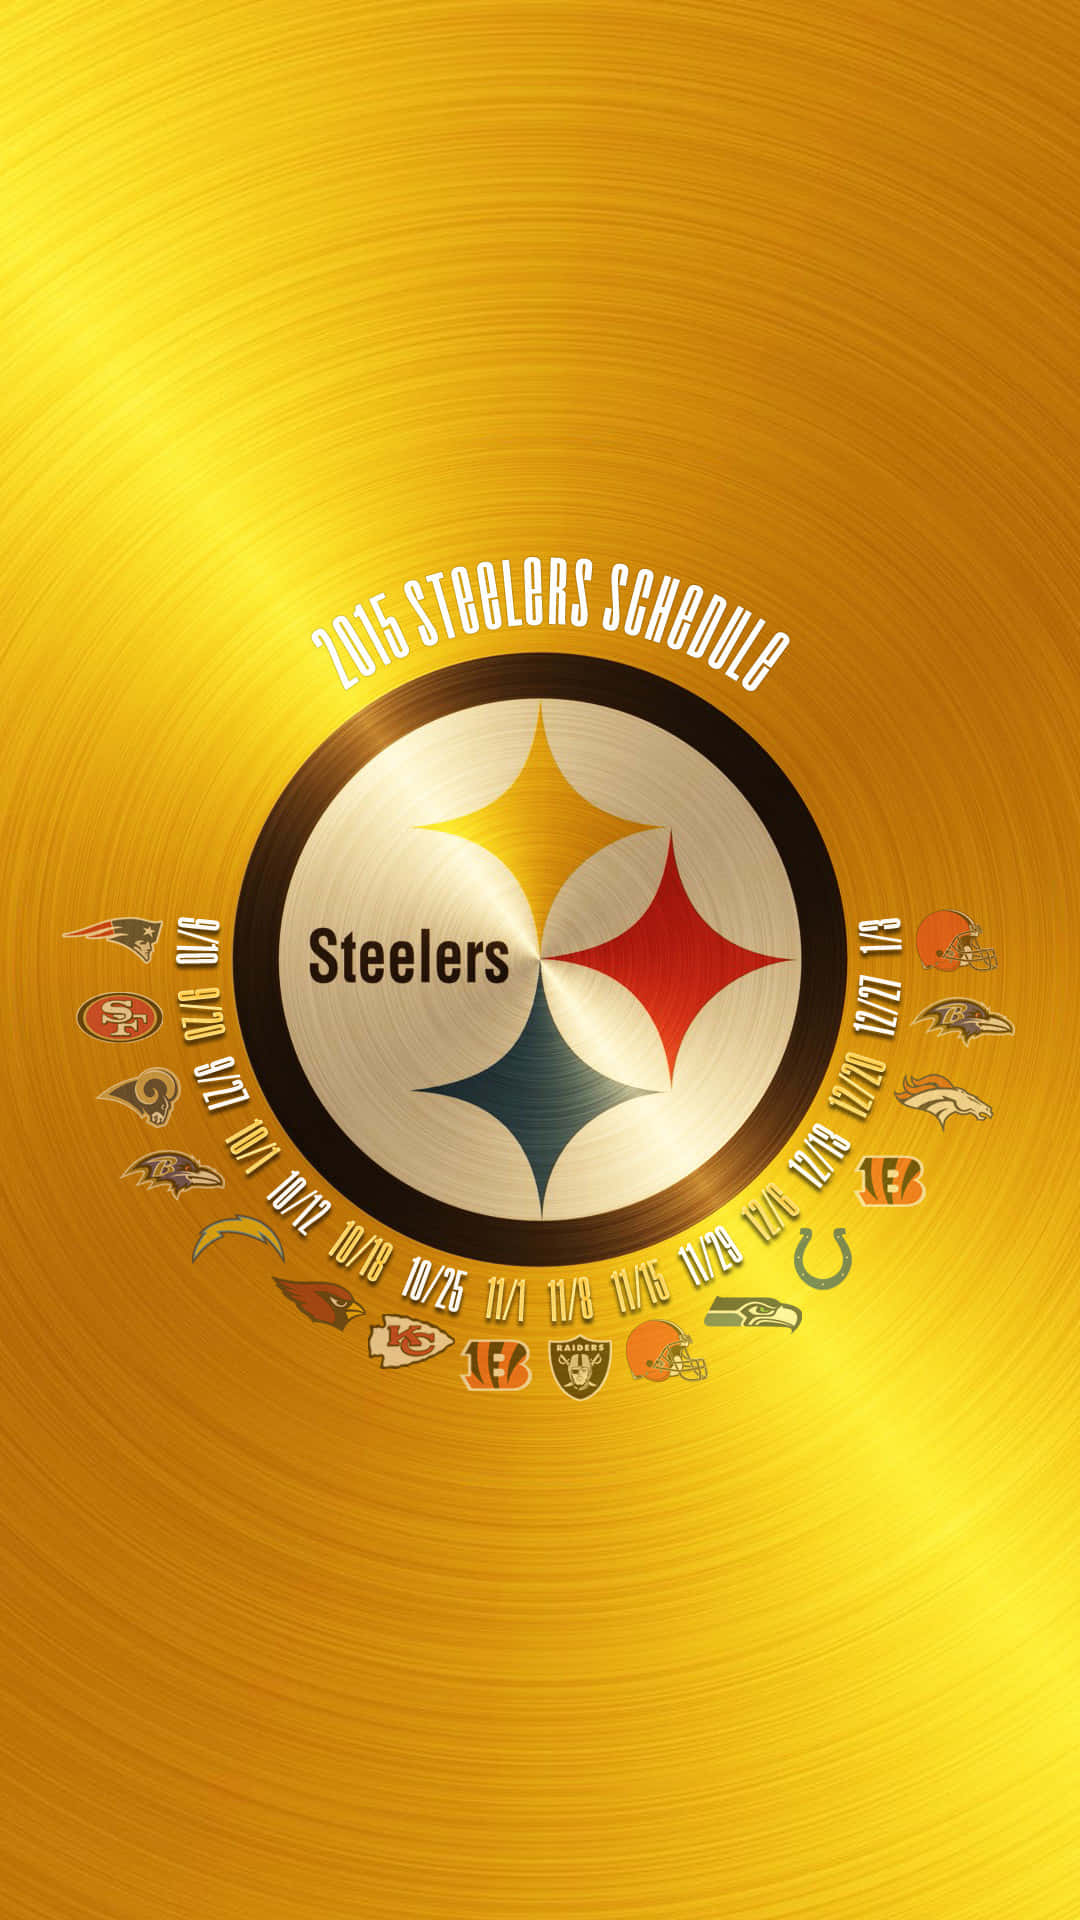 Muestratu Orgullo Por Los Steelers Con El Tema De Los Pittsburgh Steelers Para Iphone. Fondo de pantalla